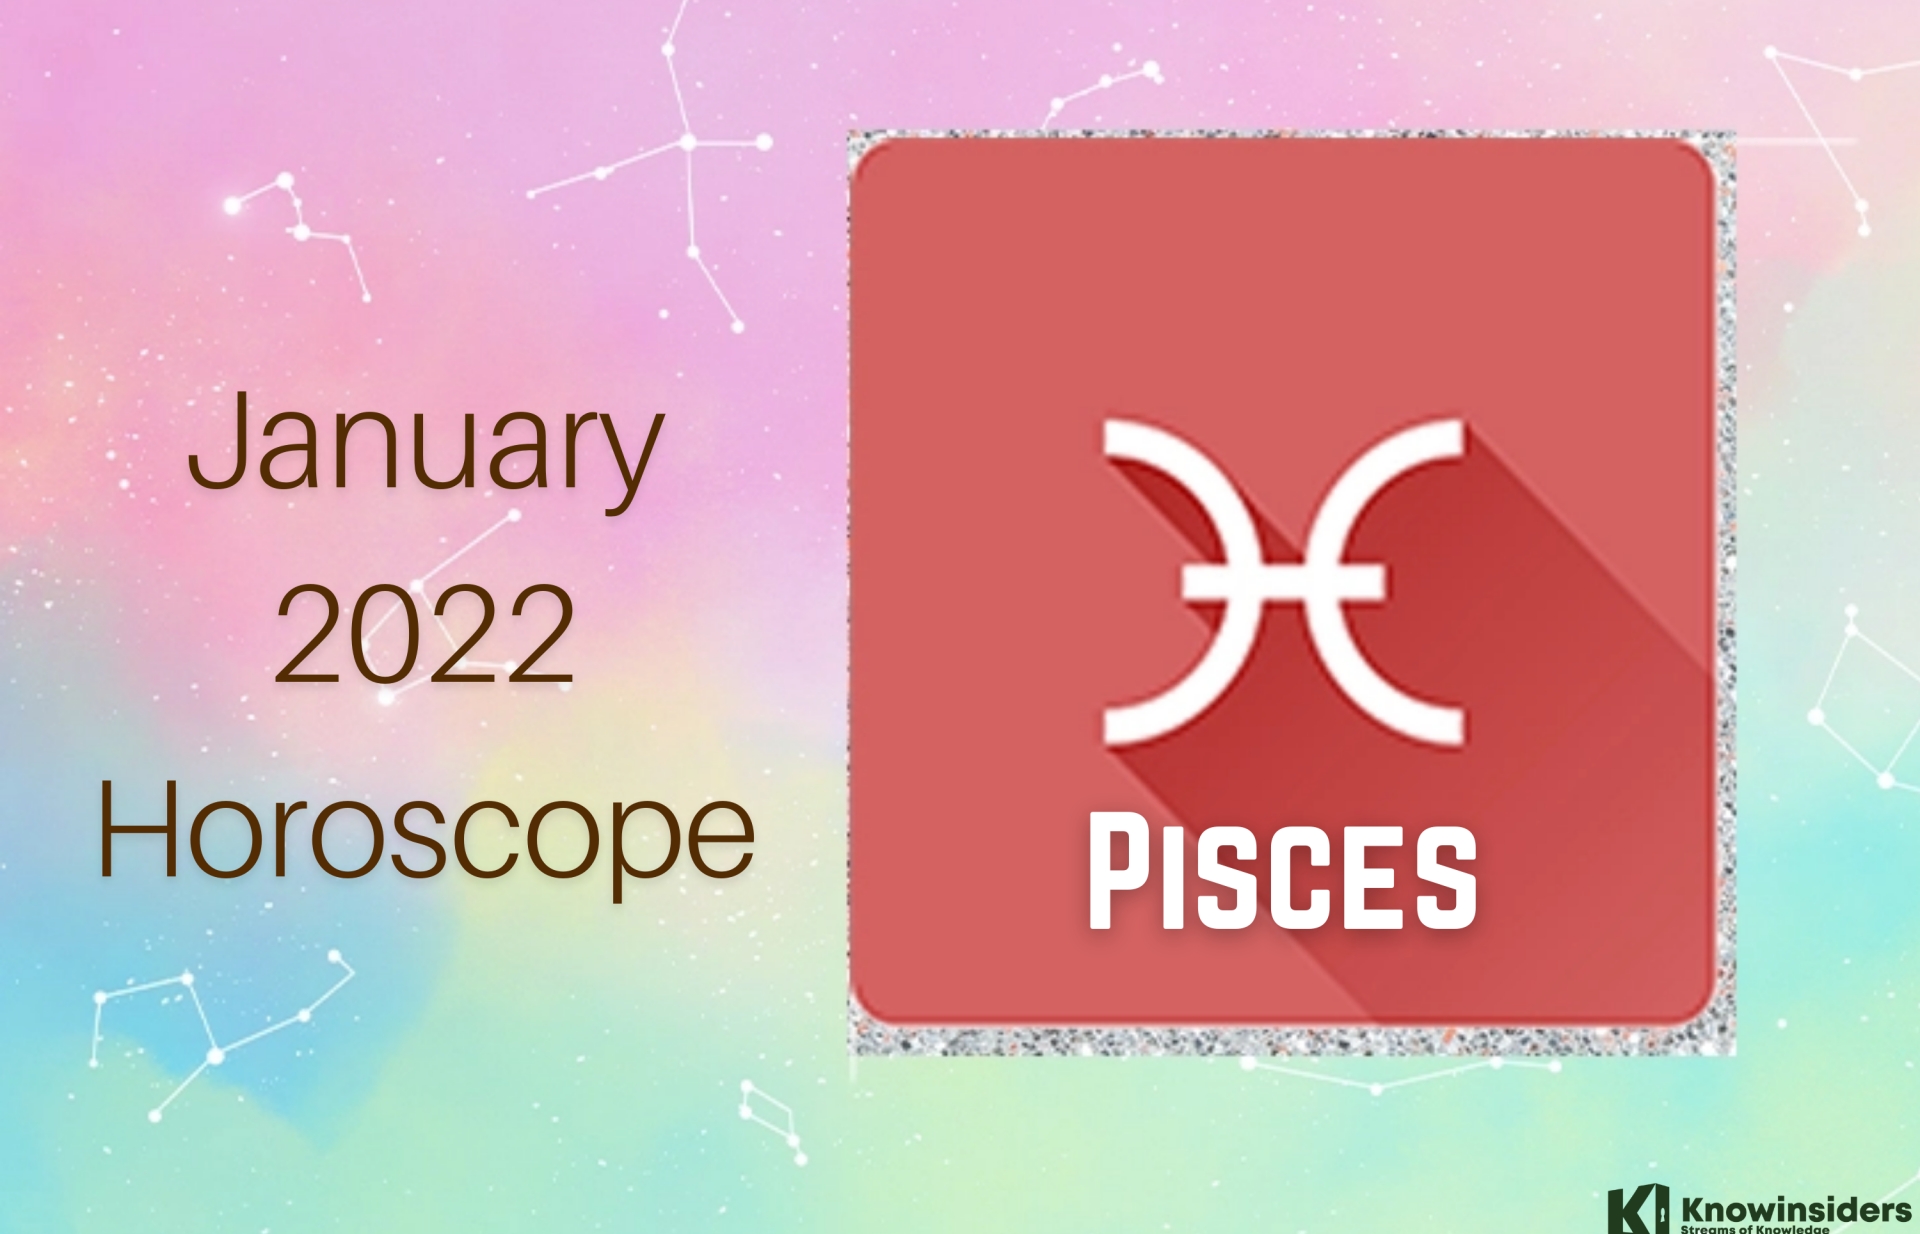 PISCES January 2022 Horoscope: Prediction for Love, Career, Money